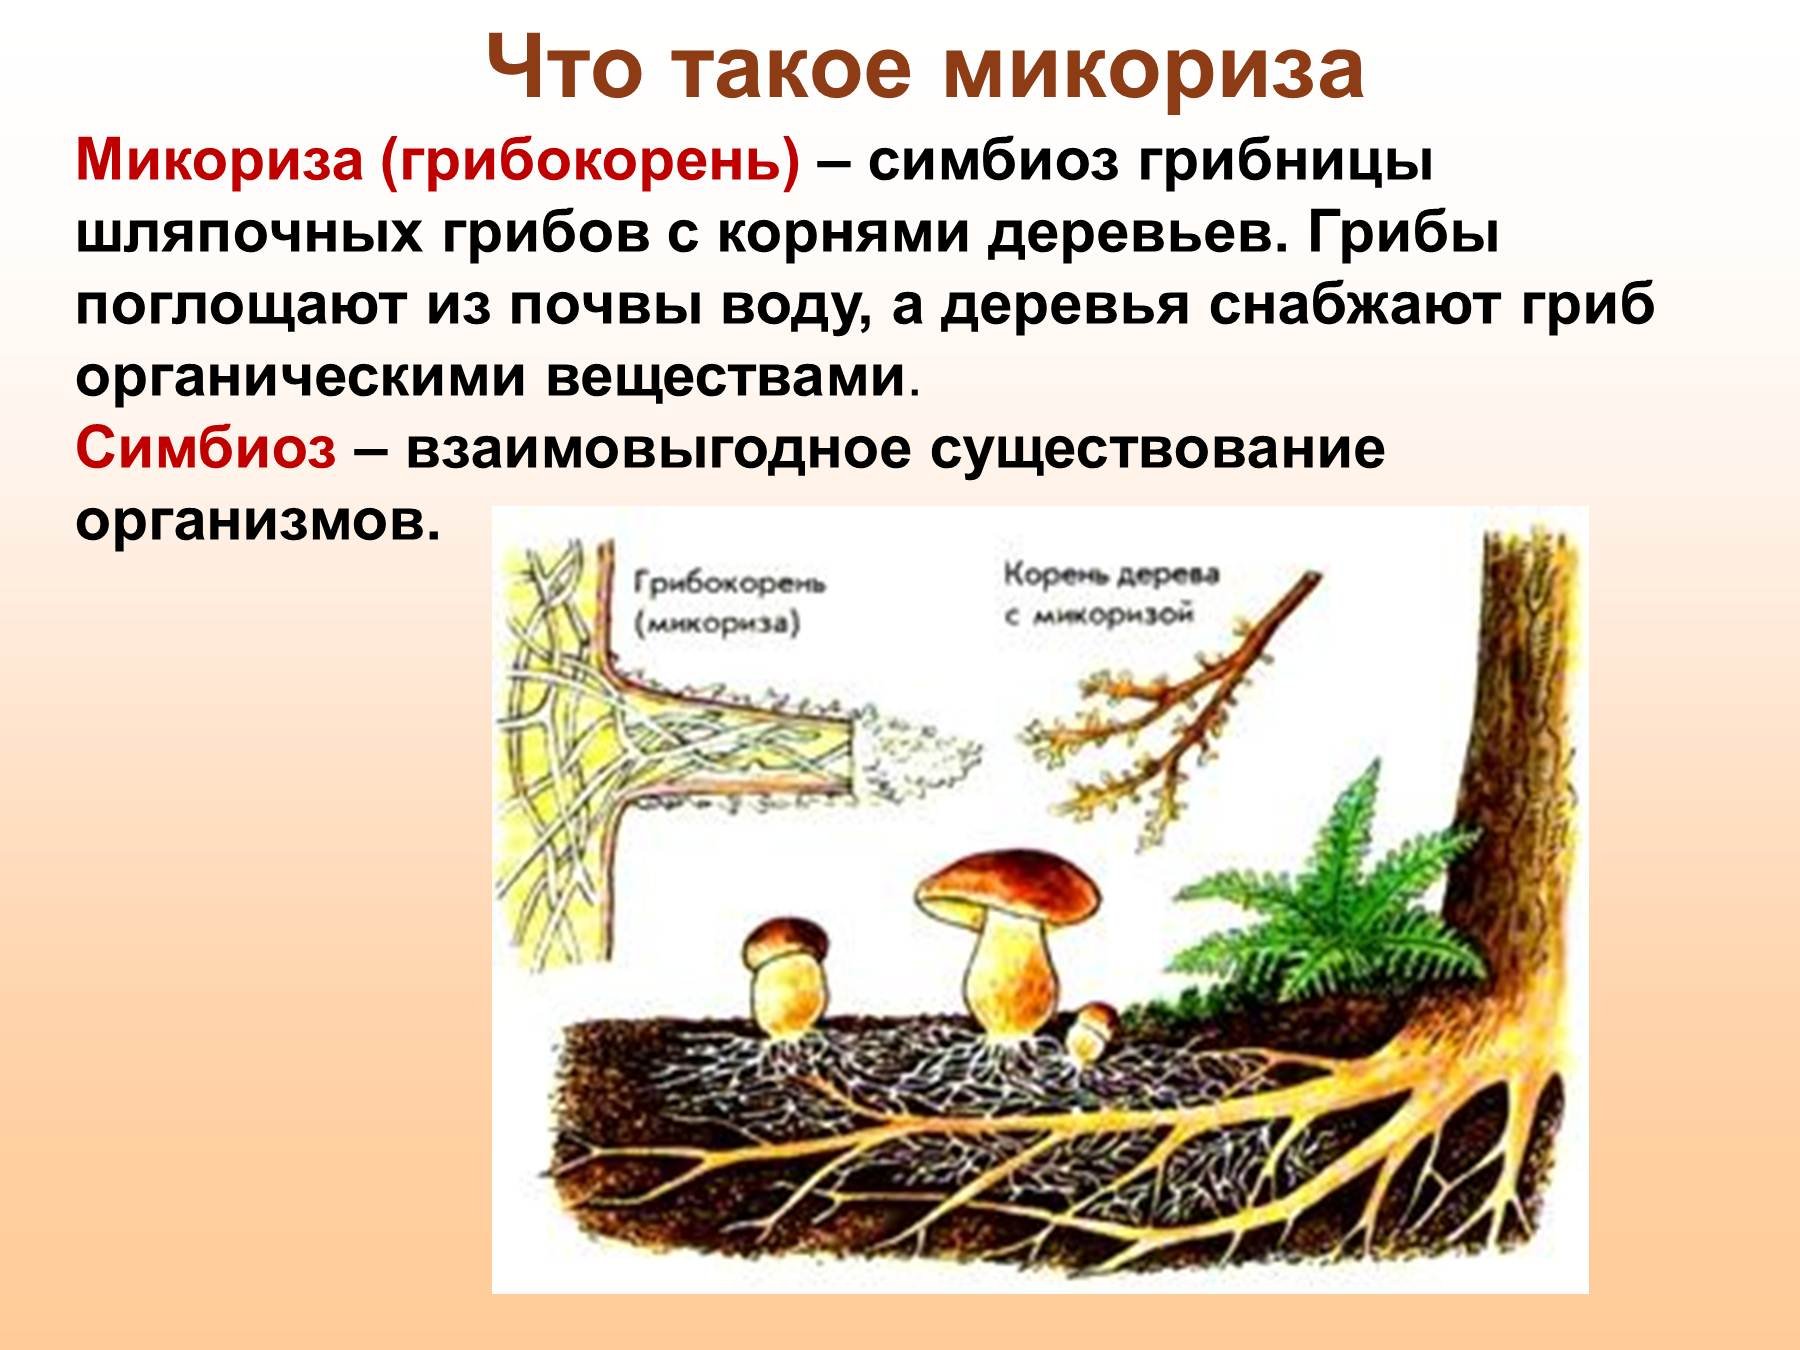 Мхи шляпочные грибы. Шляпочные грибы микориза. Микориза у шляпочных грибов. Трутовик микориза. Что такое микориза у грибов.